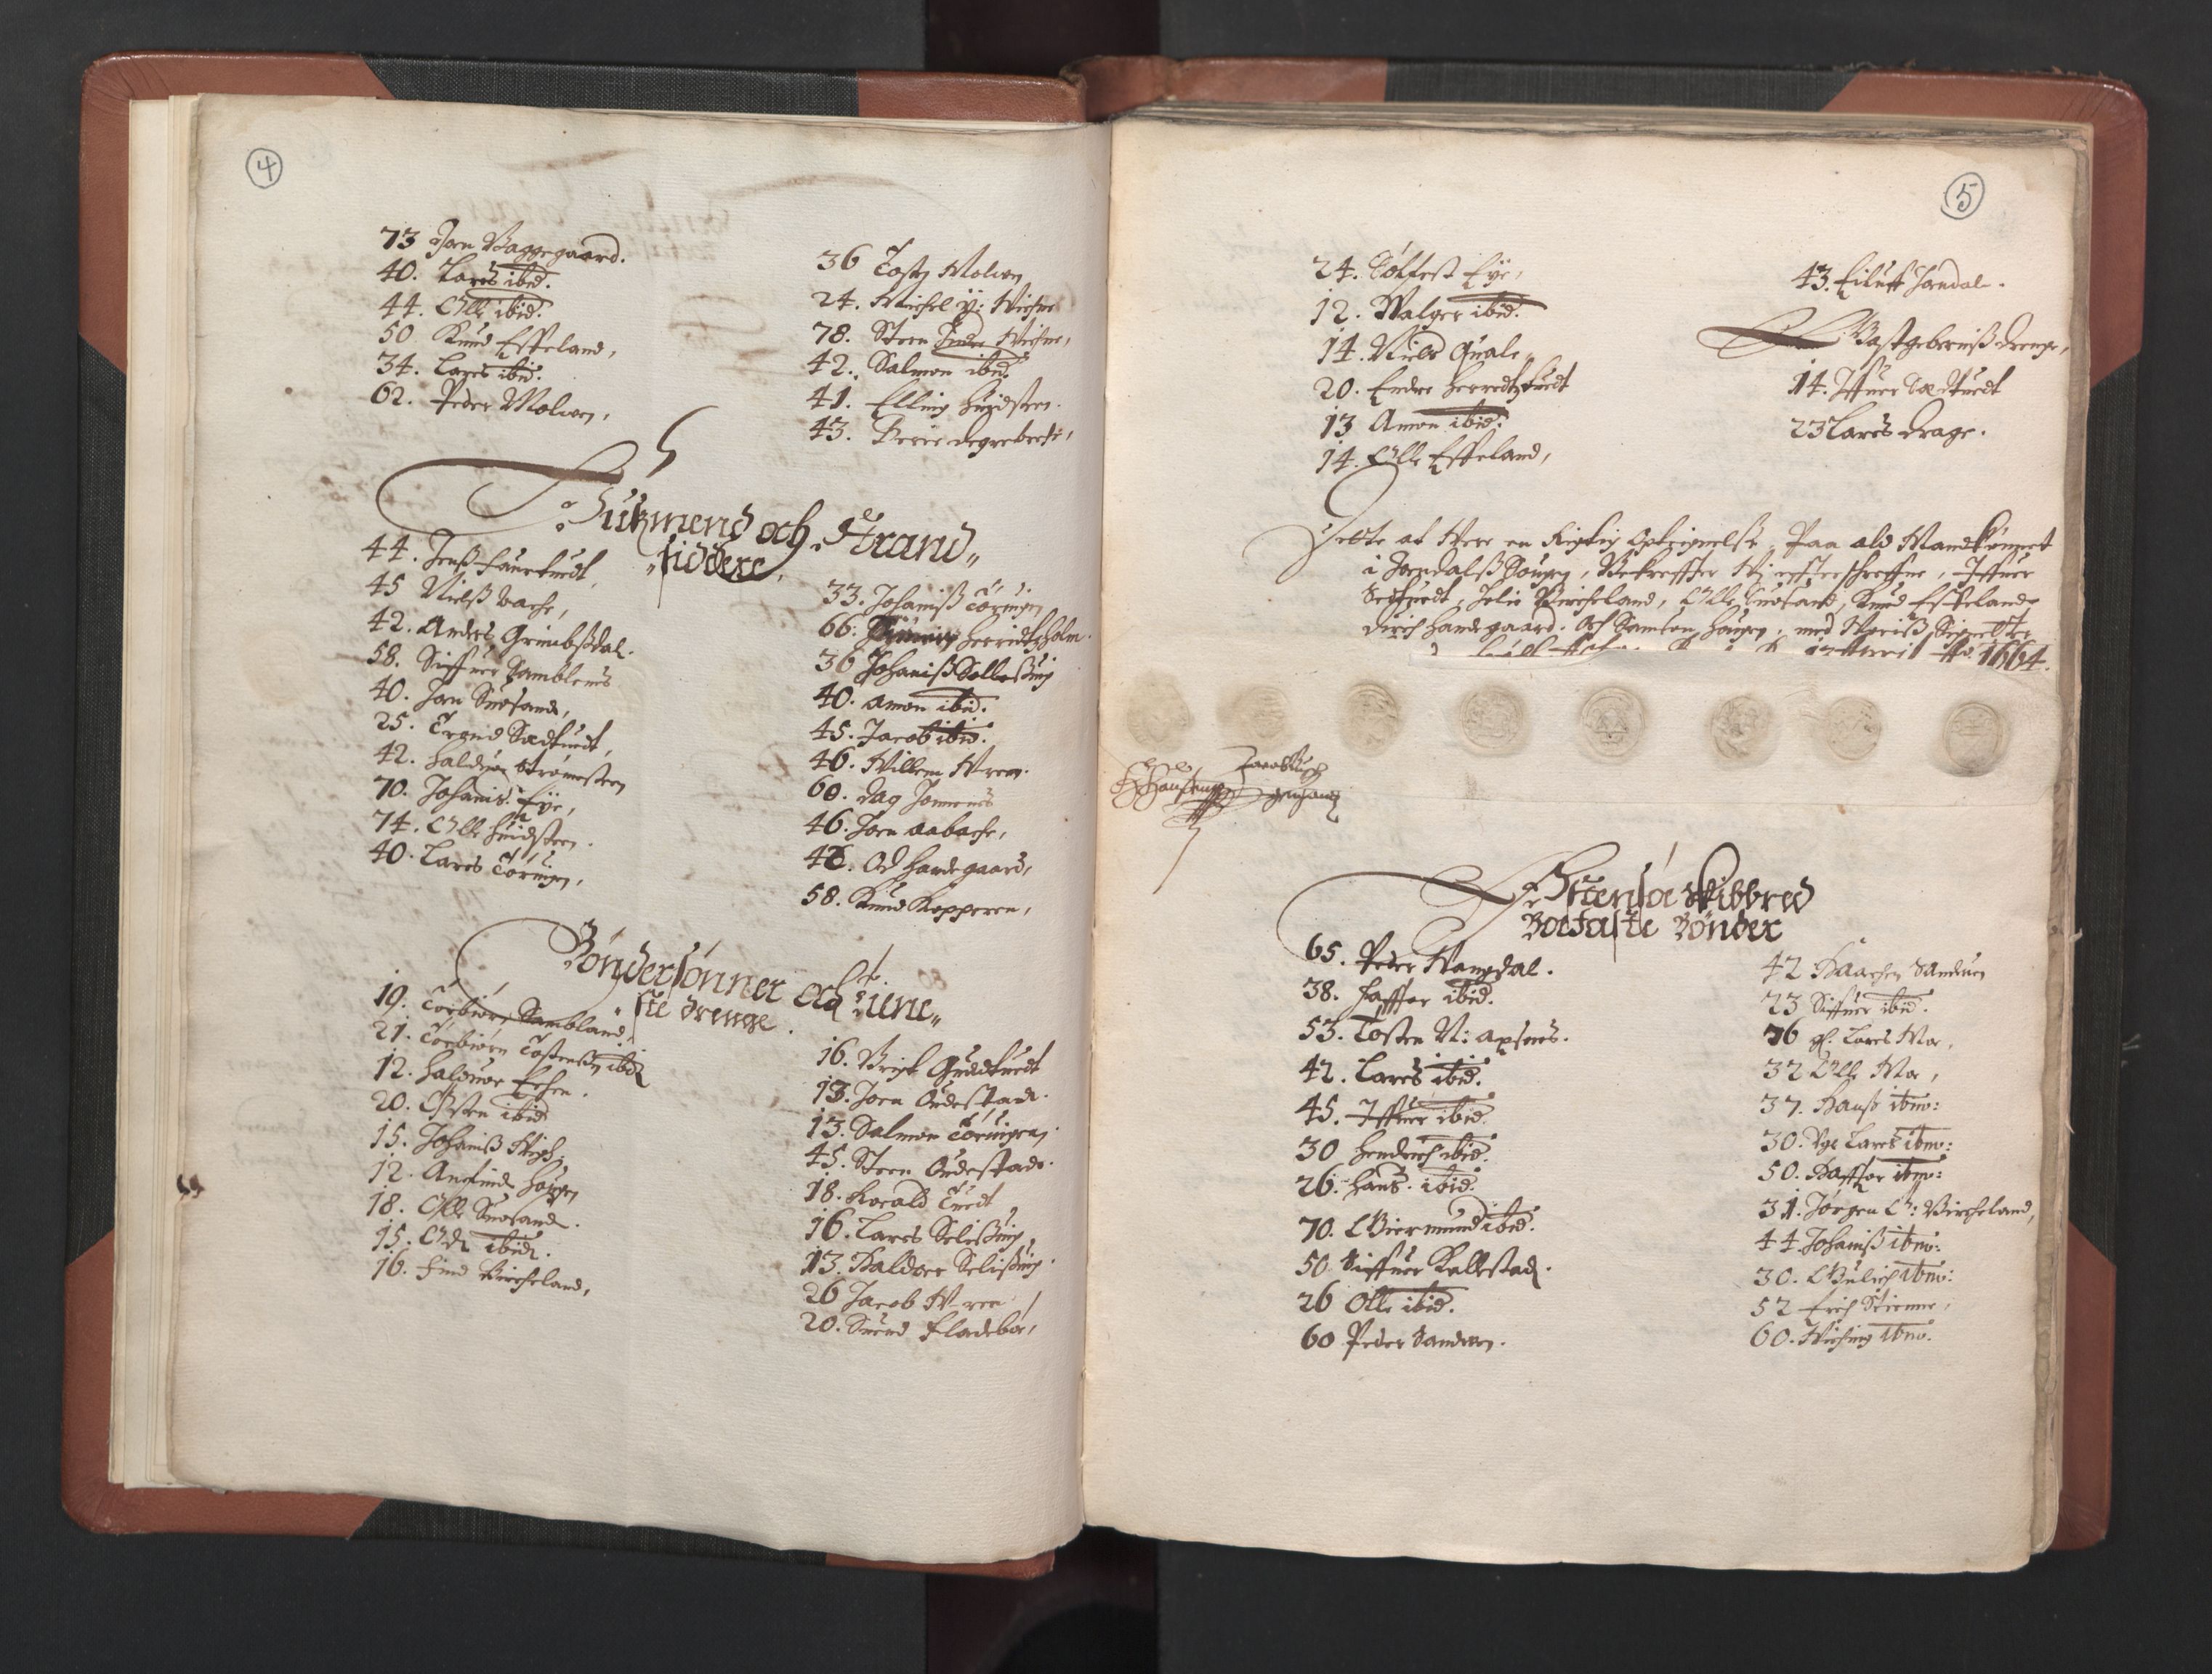 RA, Bailiff's Census 1664-1666, no. 14: Hardanger len, Ytre Sogn fogderi and Indre Sogn fogderi, 1664-1665, p. 4-5